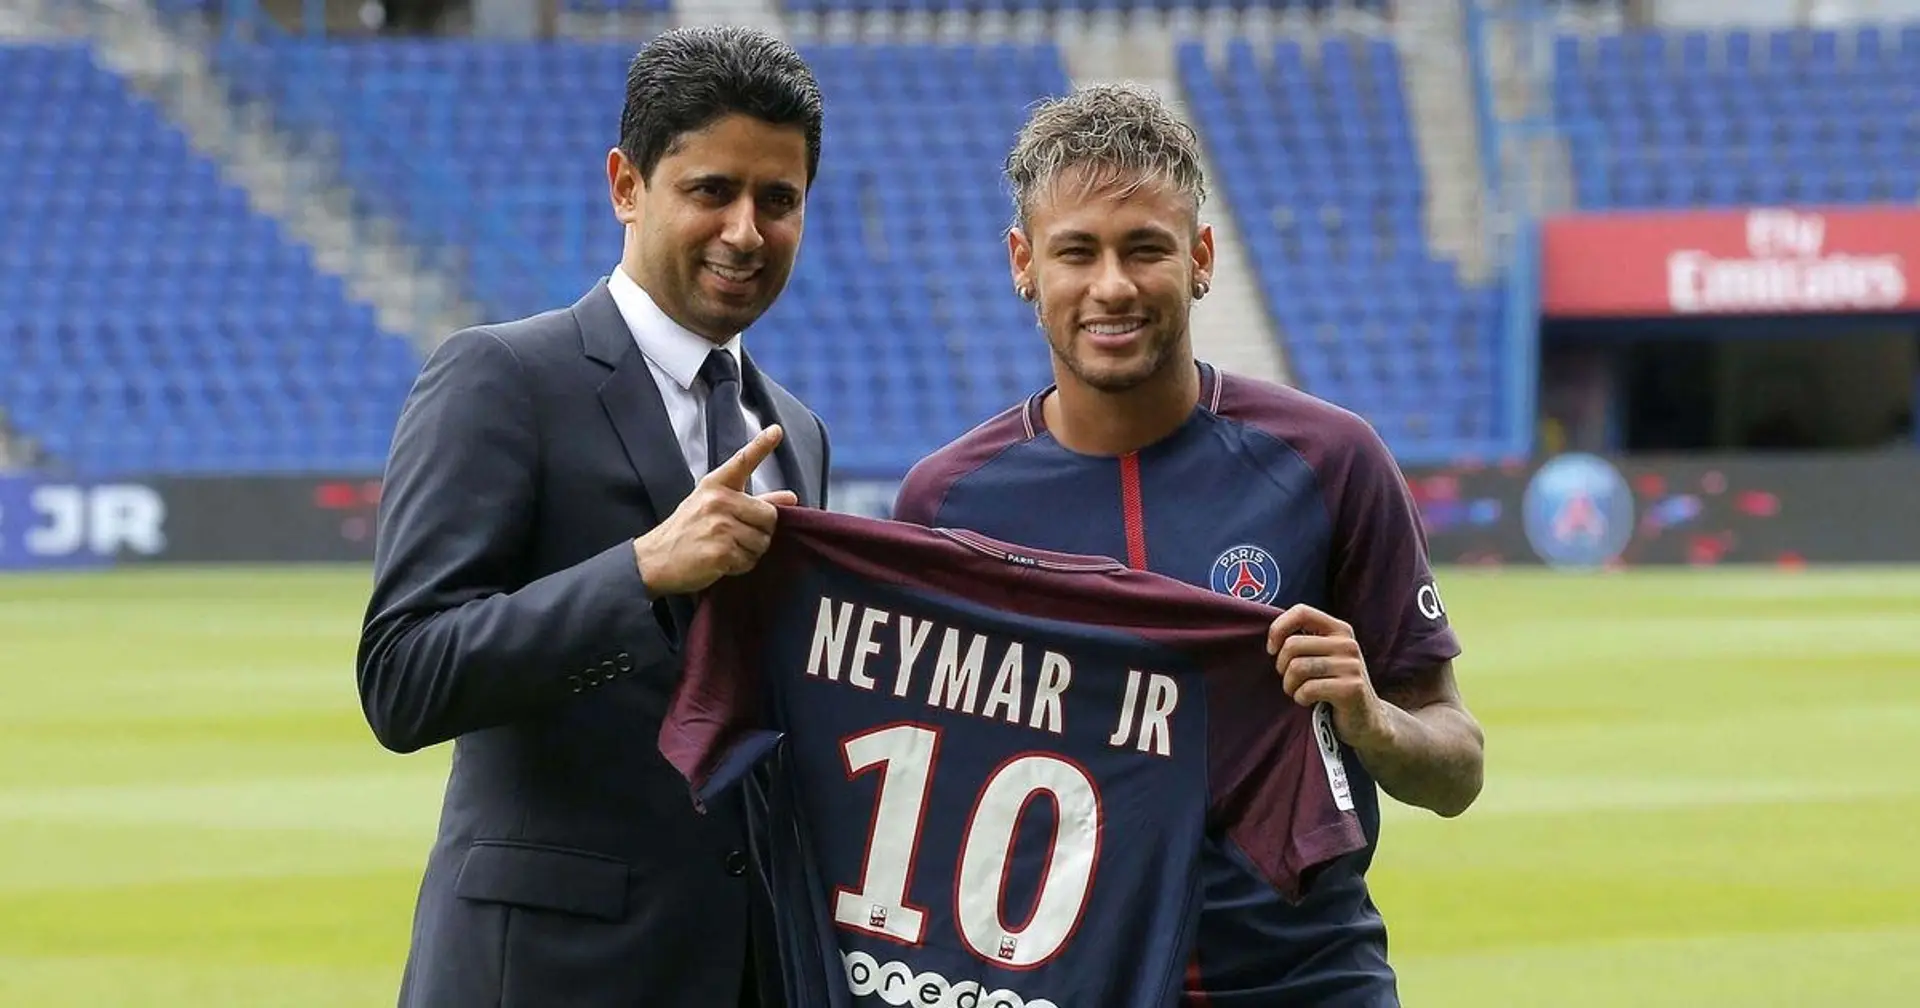 Le parquet de Paris annonce l'ouverture d'une information judiciaire dans le cadre du transfert de Neymar au PSG en 2017